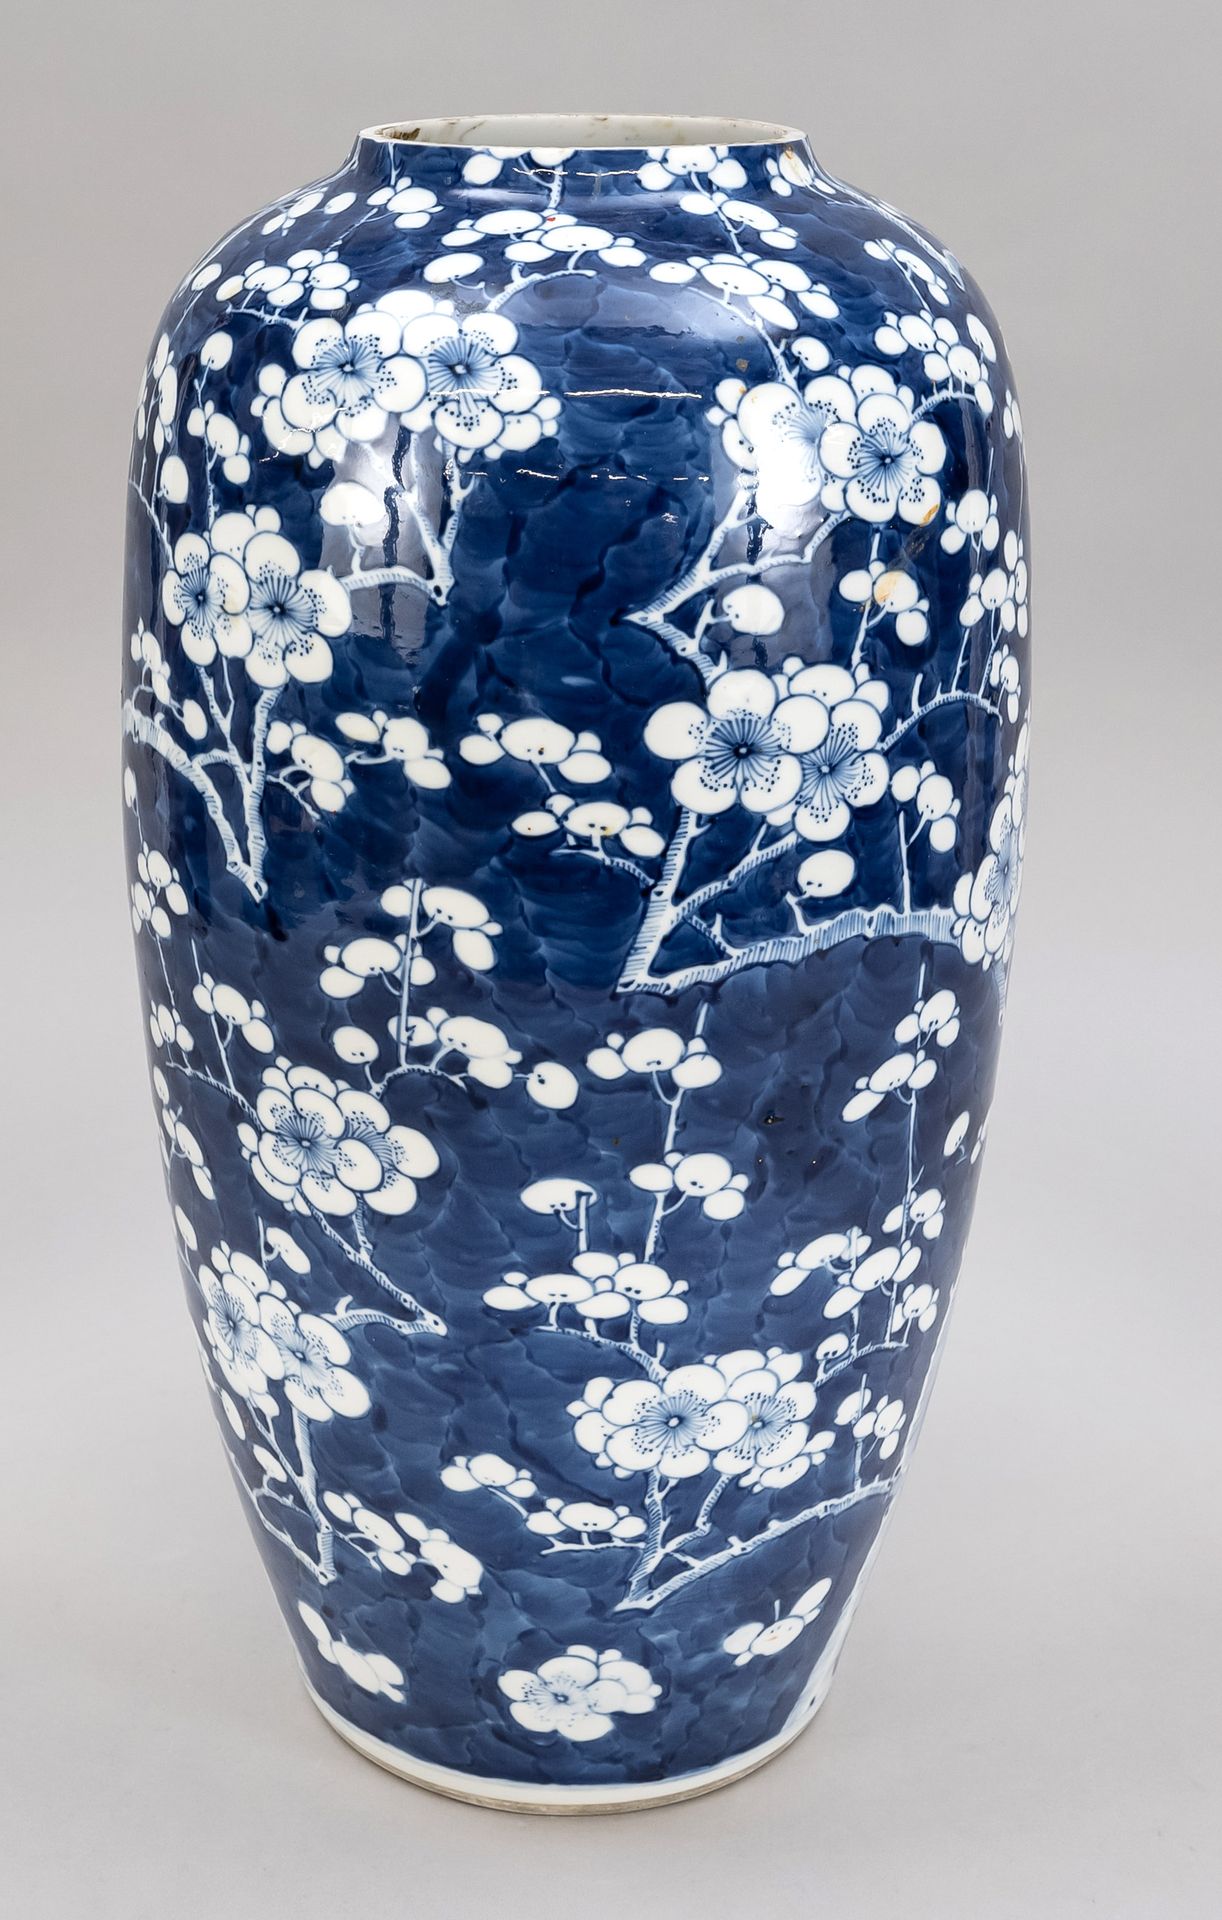 Null Vase mit Prunus Dekor, China, 17./18. Jh. (Kangxi/Qing). Umlaufend dekorier&hellip;